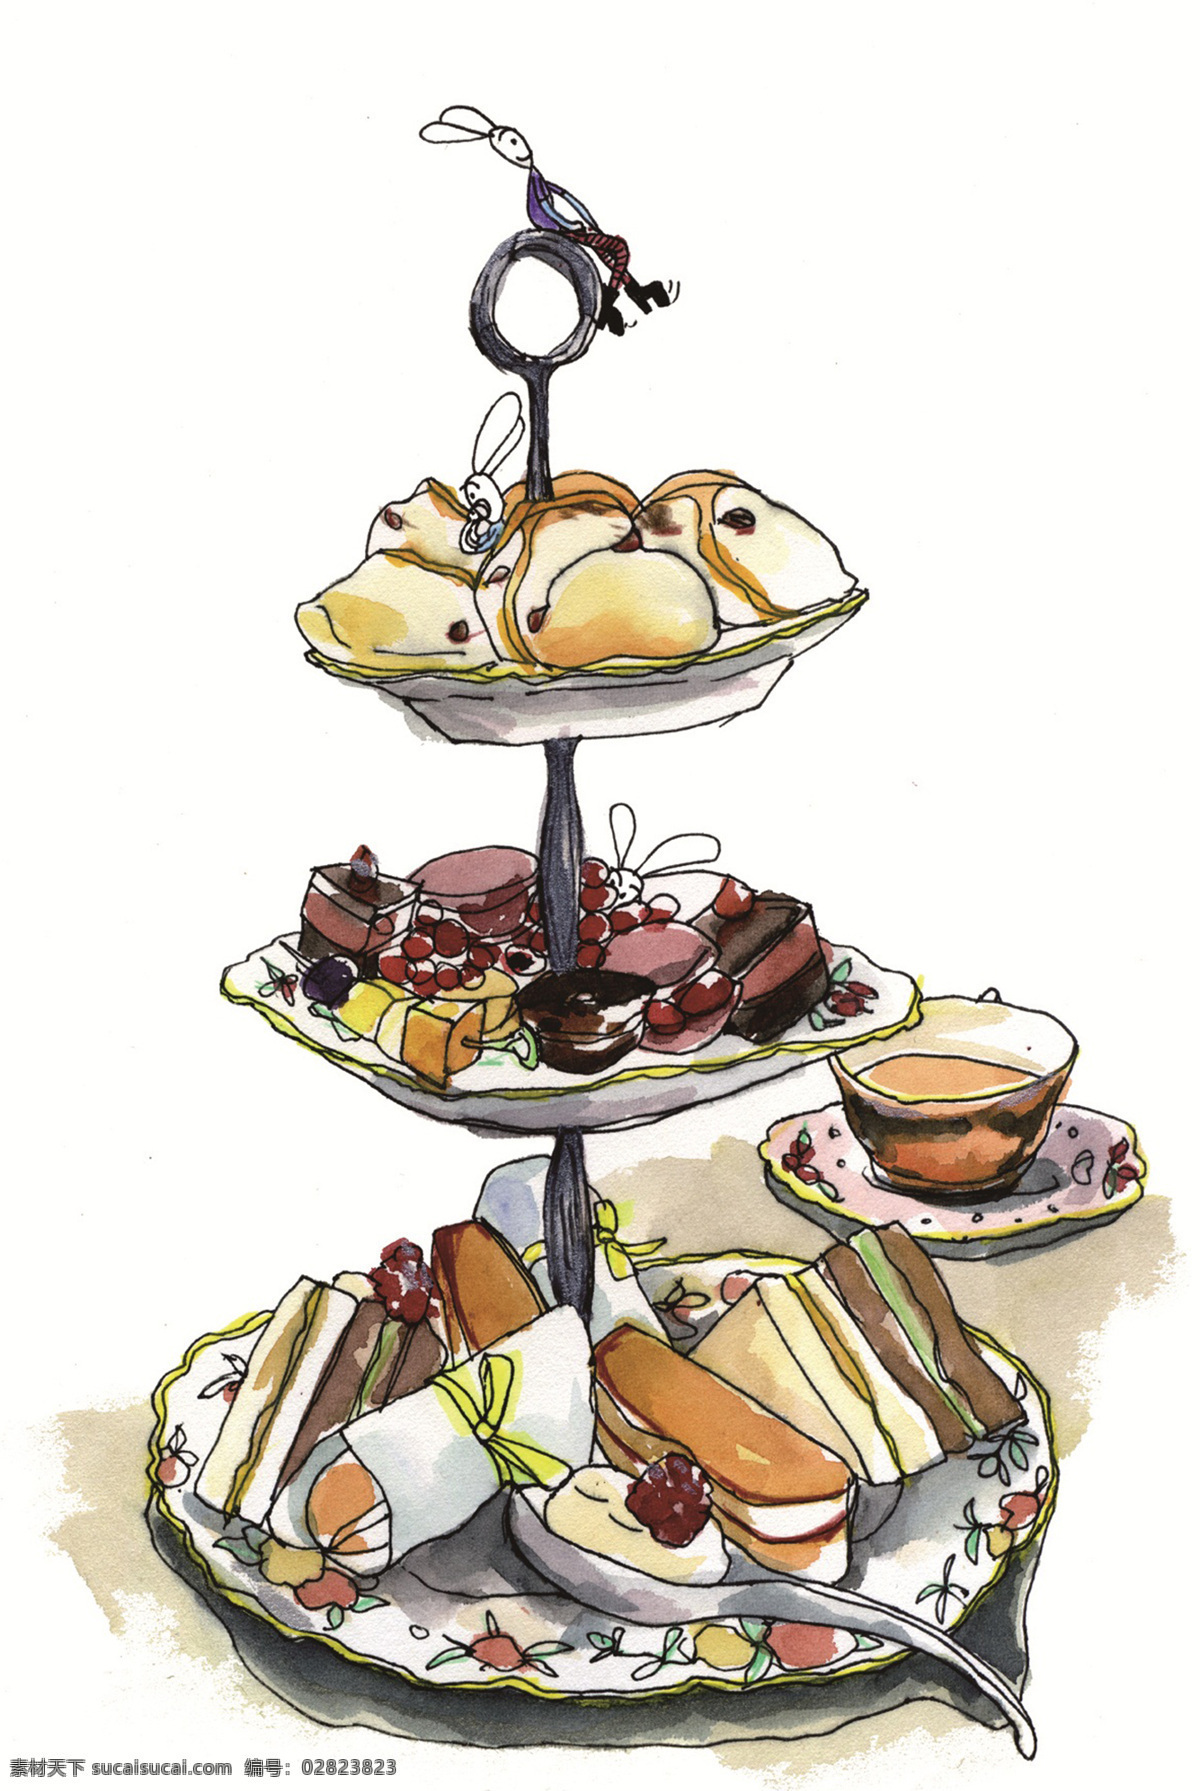 英式 下午 茶水 彩画 英国 下午茶 水彩画 大图 餐饮美食 生活百科